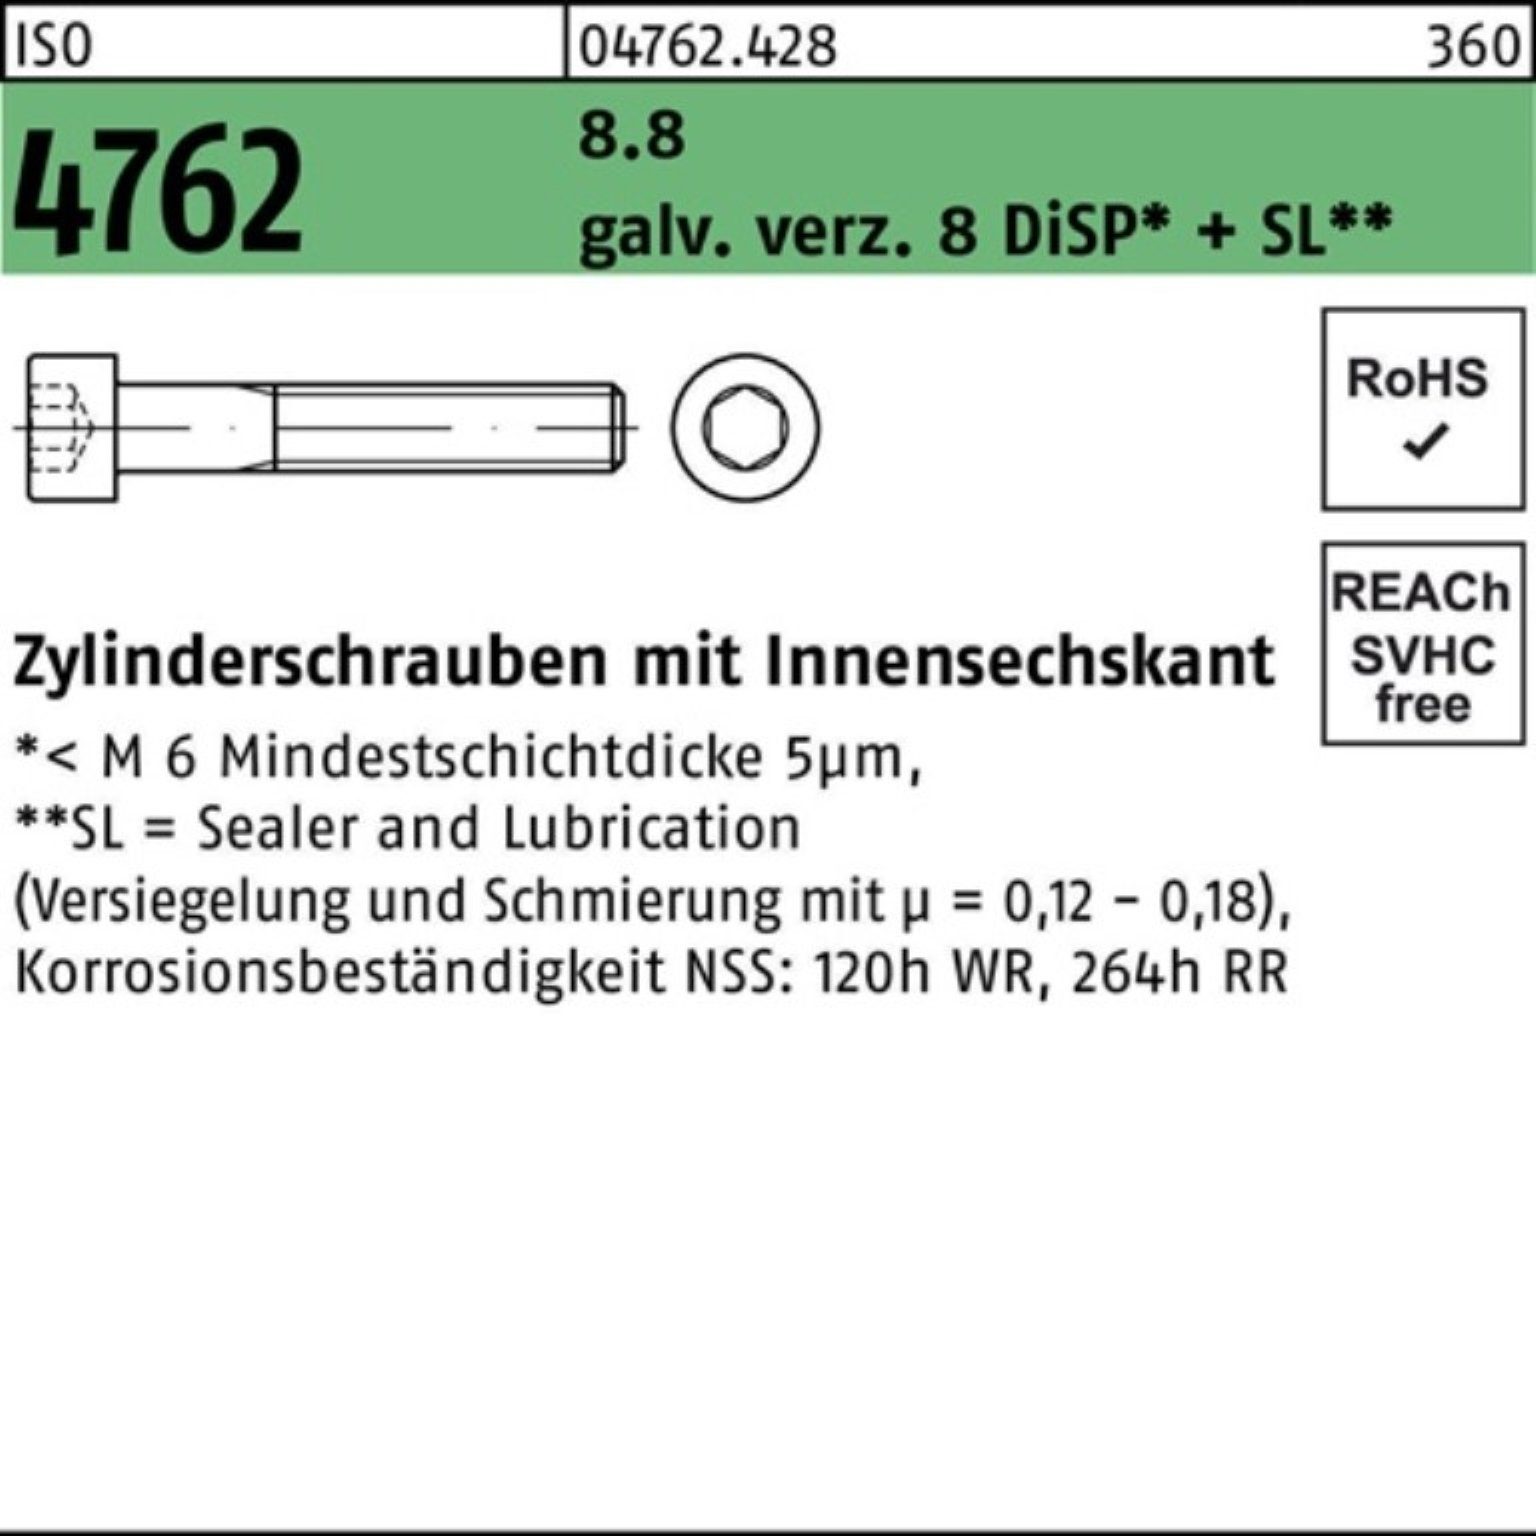 [Neu eingeführt] Reyher Zylinderschraube 200er 4762 galv.verz. 8 8.8 Pack ISO Zylinderschraube M5x35 Innen-6kt